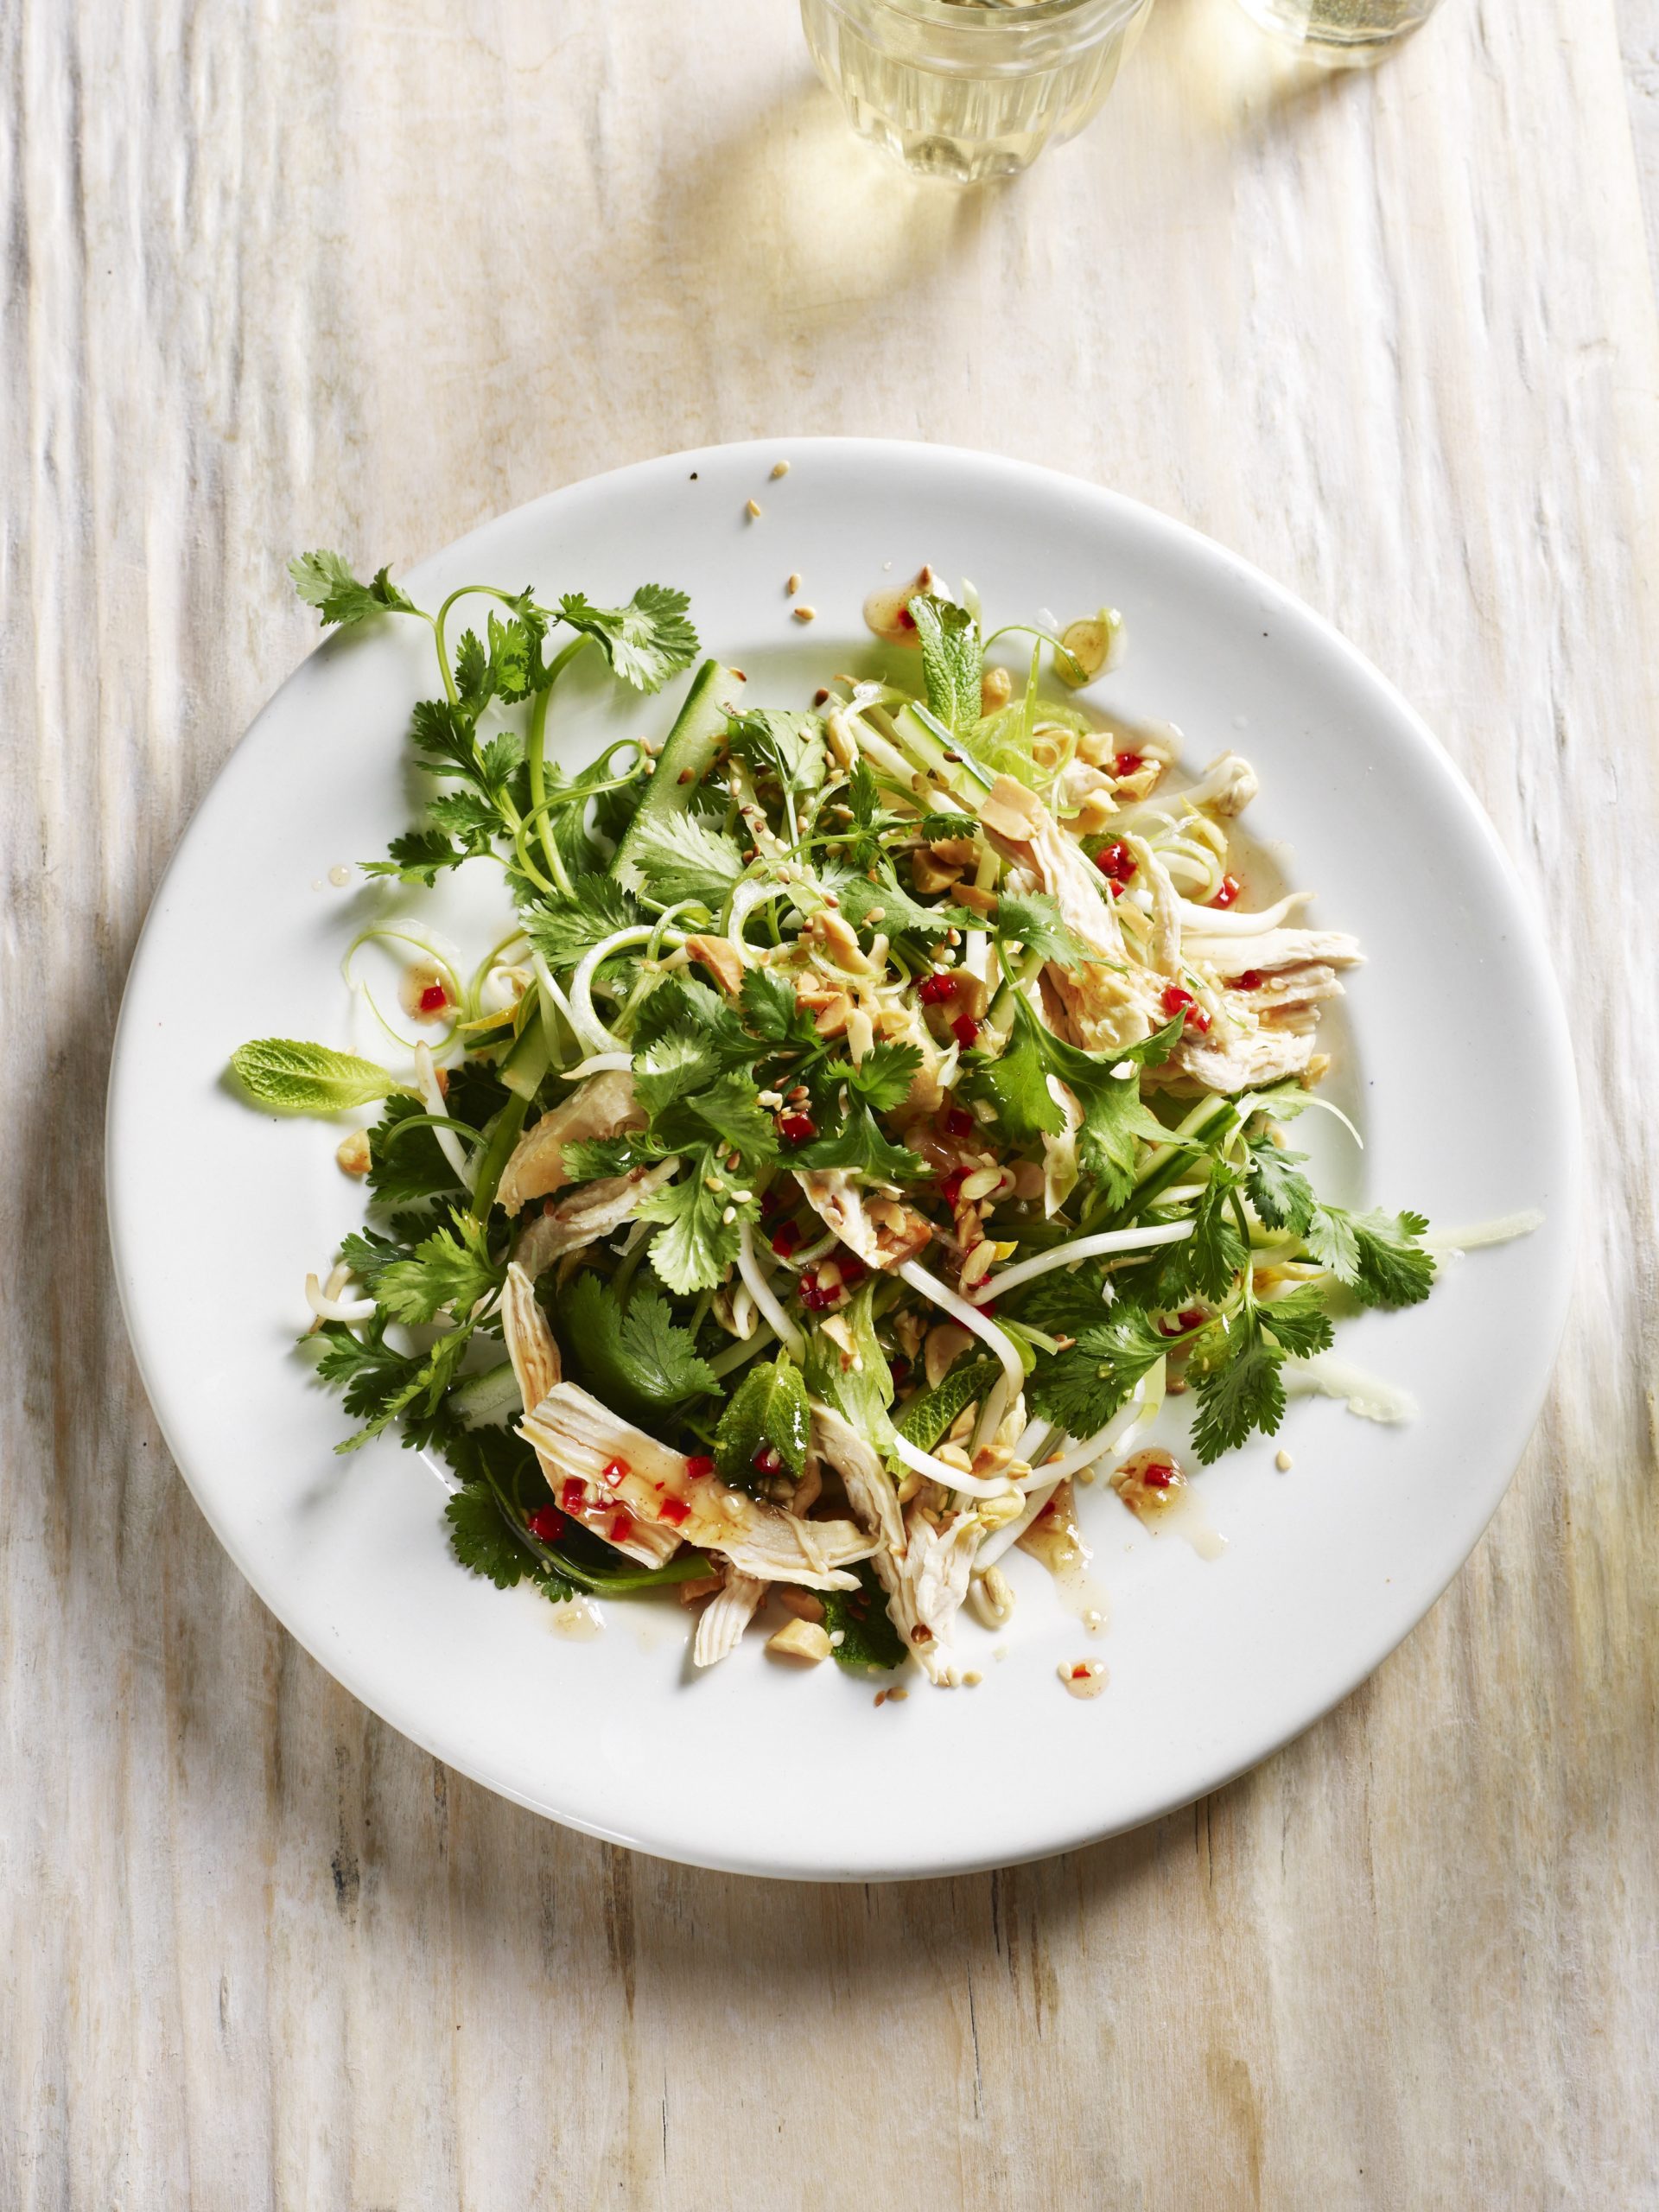 Rick Stein’s Vietnamese poached chicken salad with mint & coriander